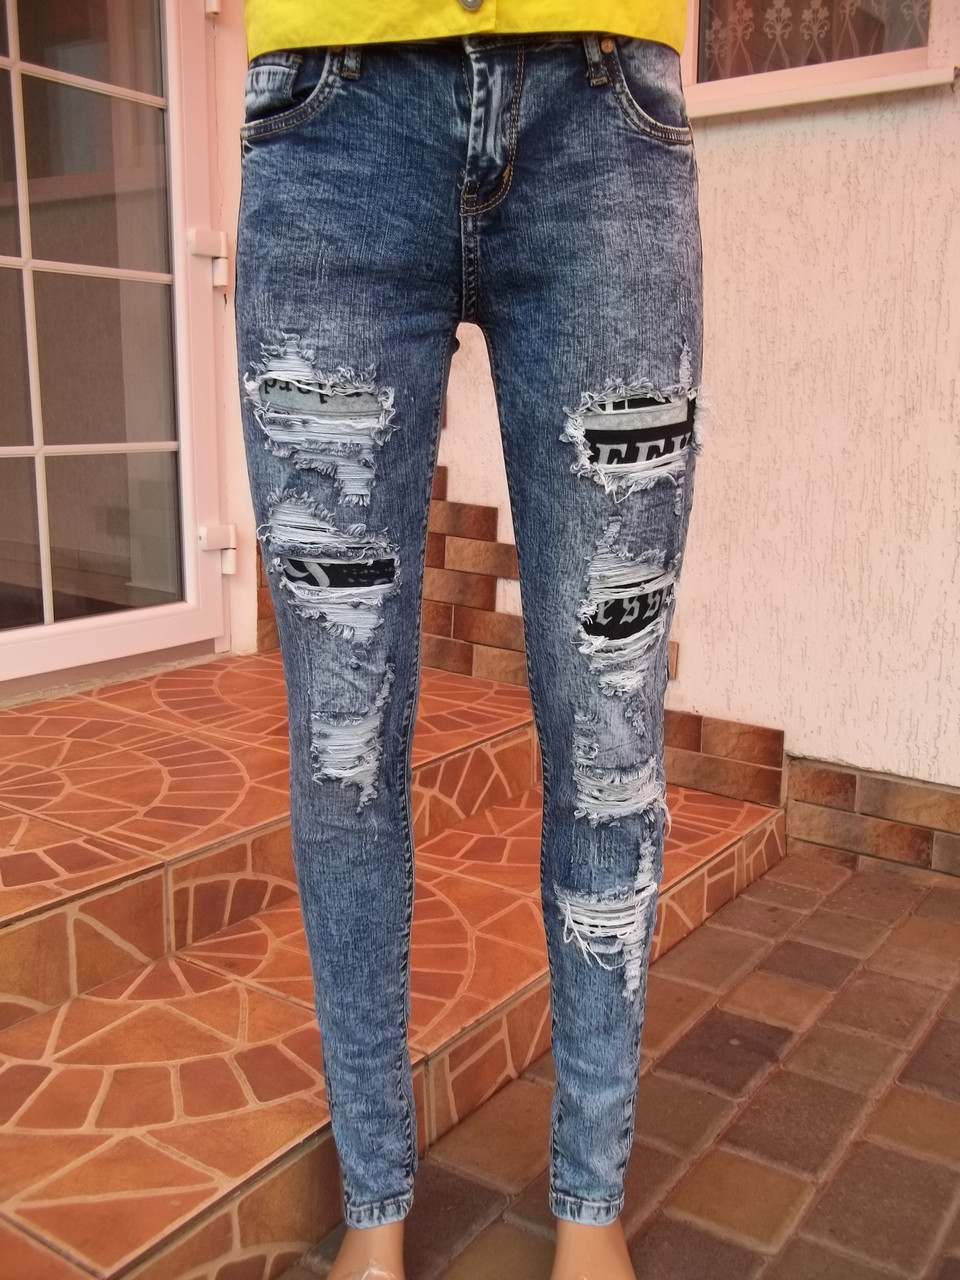 (44р — пояс — 76/80 см) Стрейчеві джинси скіні джегінси трегінси НОВІ